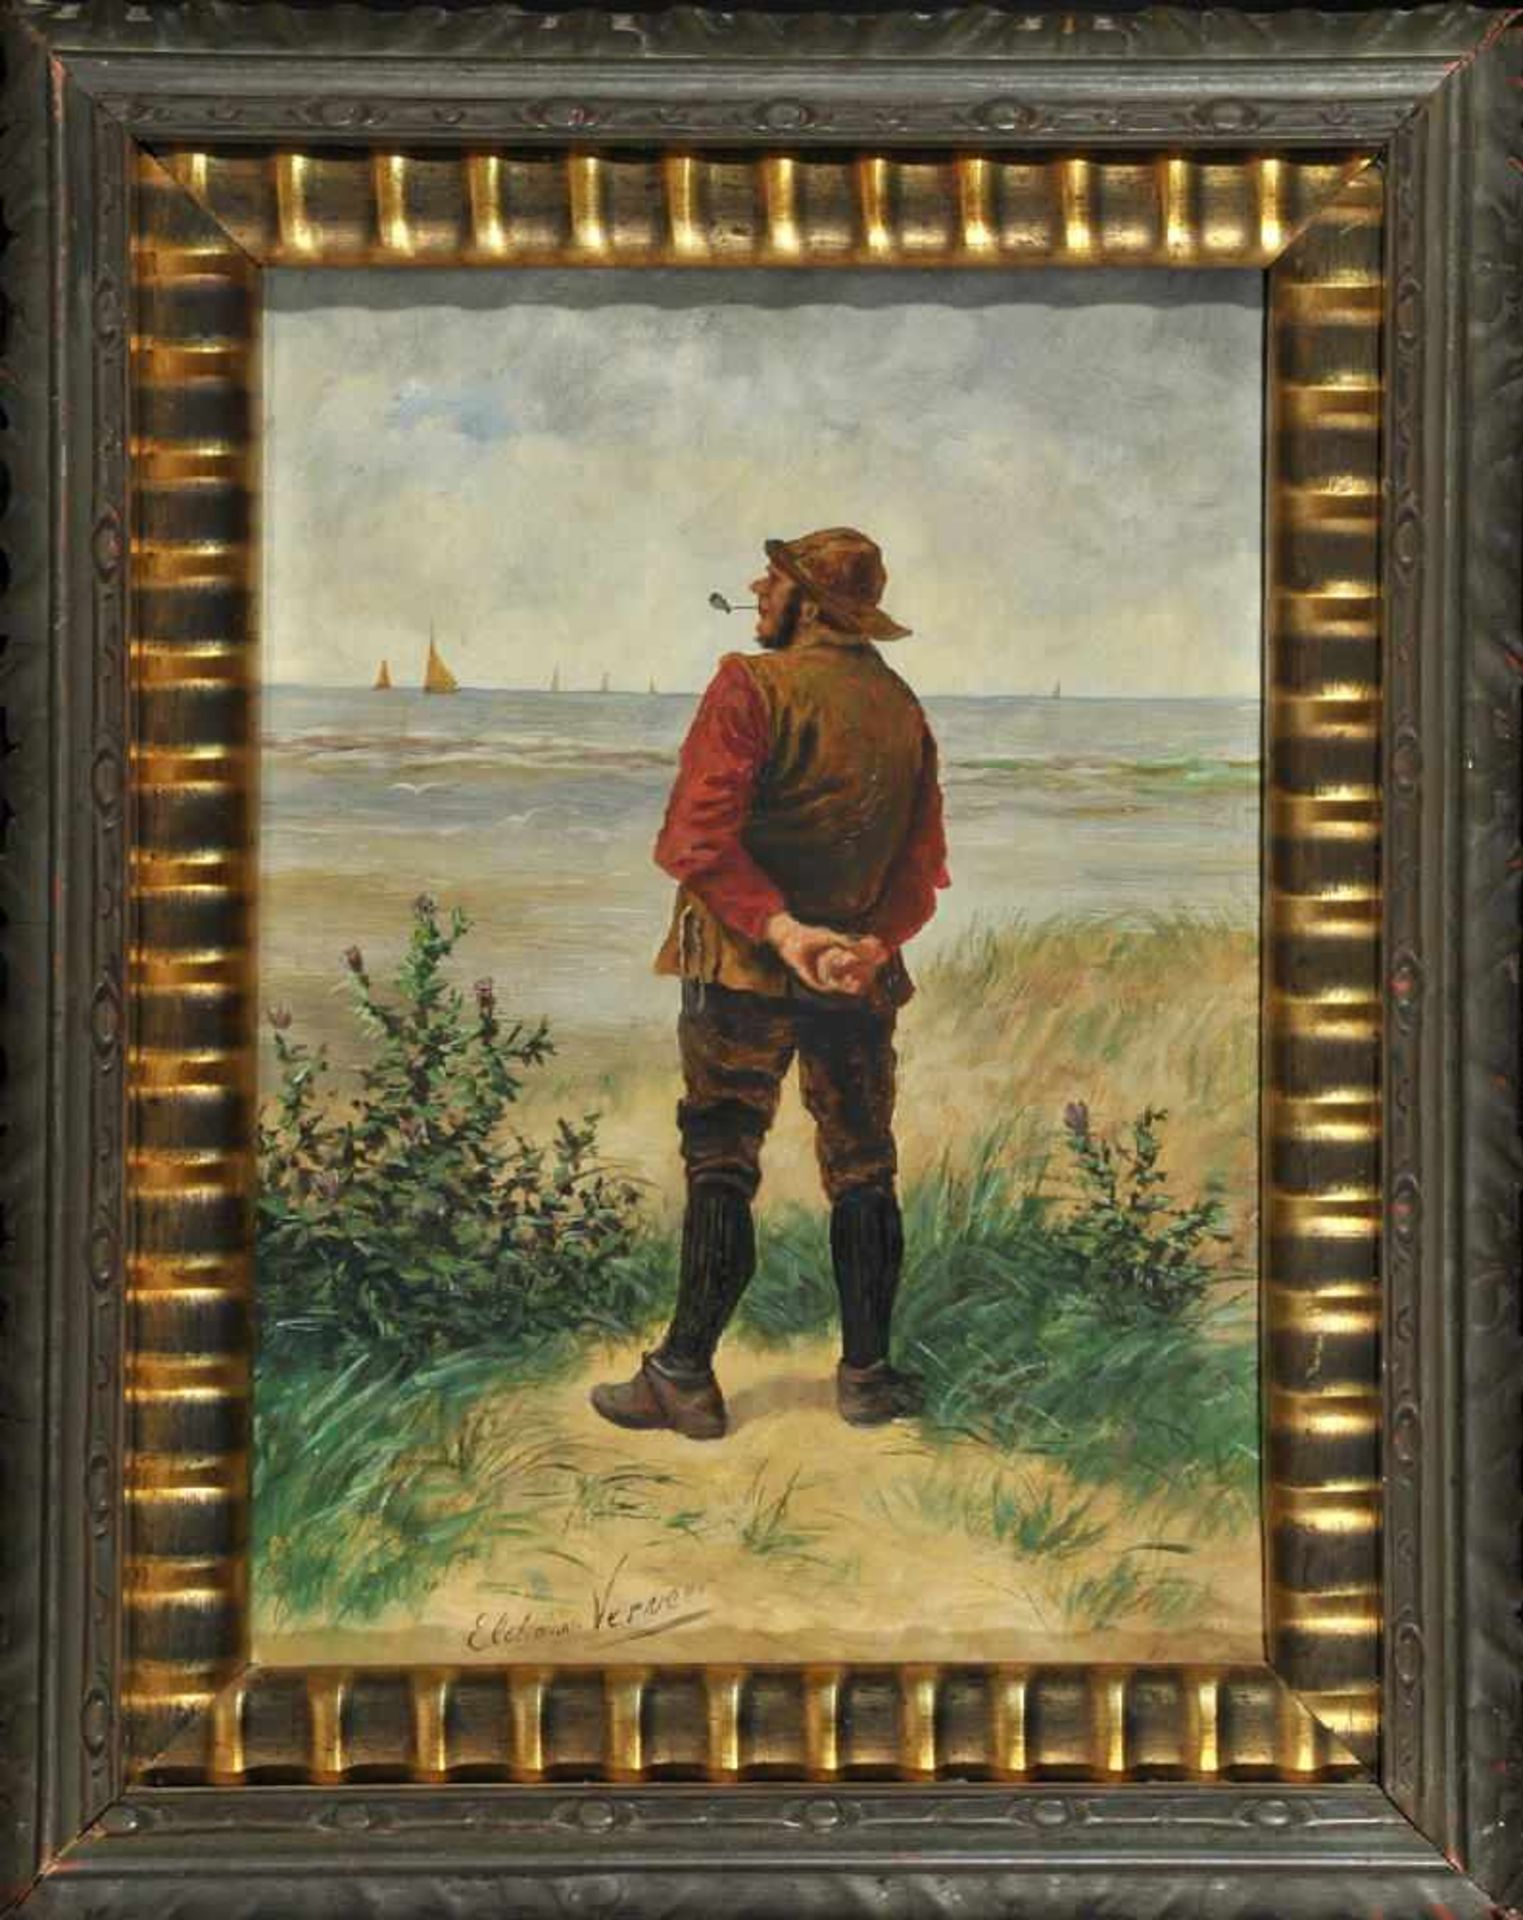 Verveer, Elchanon, 1826 - 1900 Den HaagÖl/Eichenholz, 30 x 22,5 cm, " Fischer am Strand ", u.l.